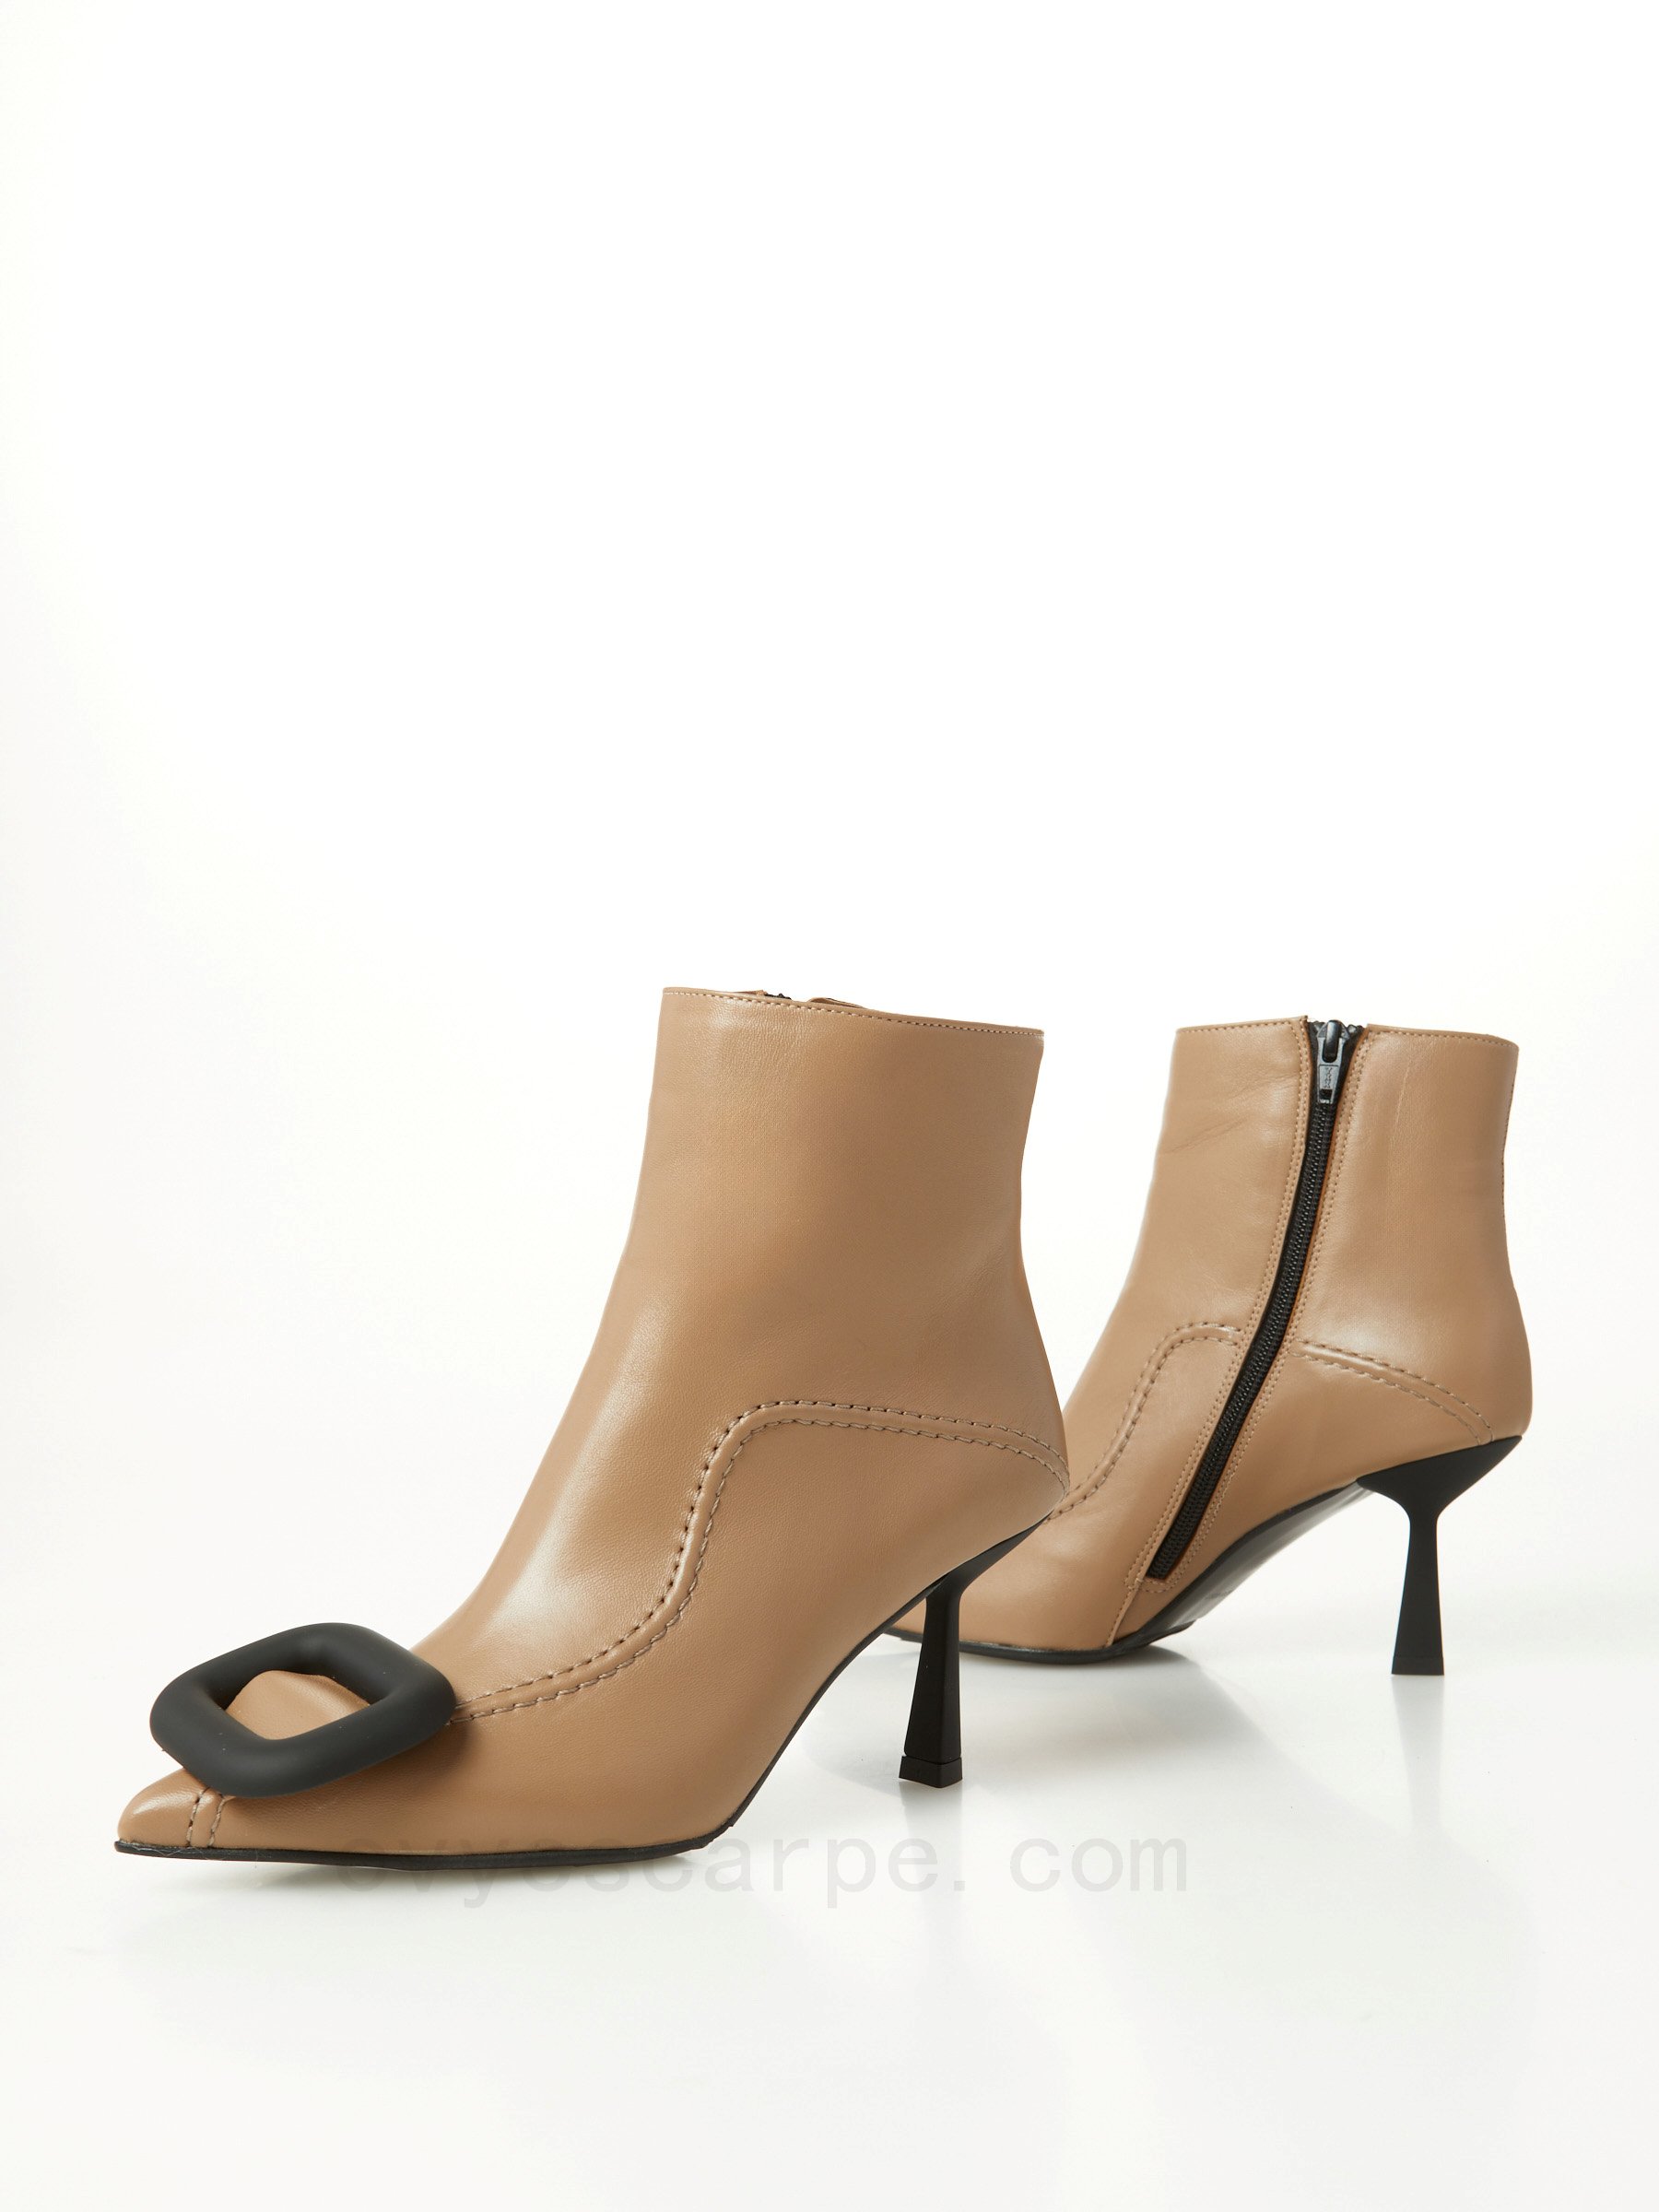 (image for) Negozi Online Leather Ankle Boot F08161027-0600 scarpe alla moda